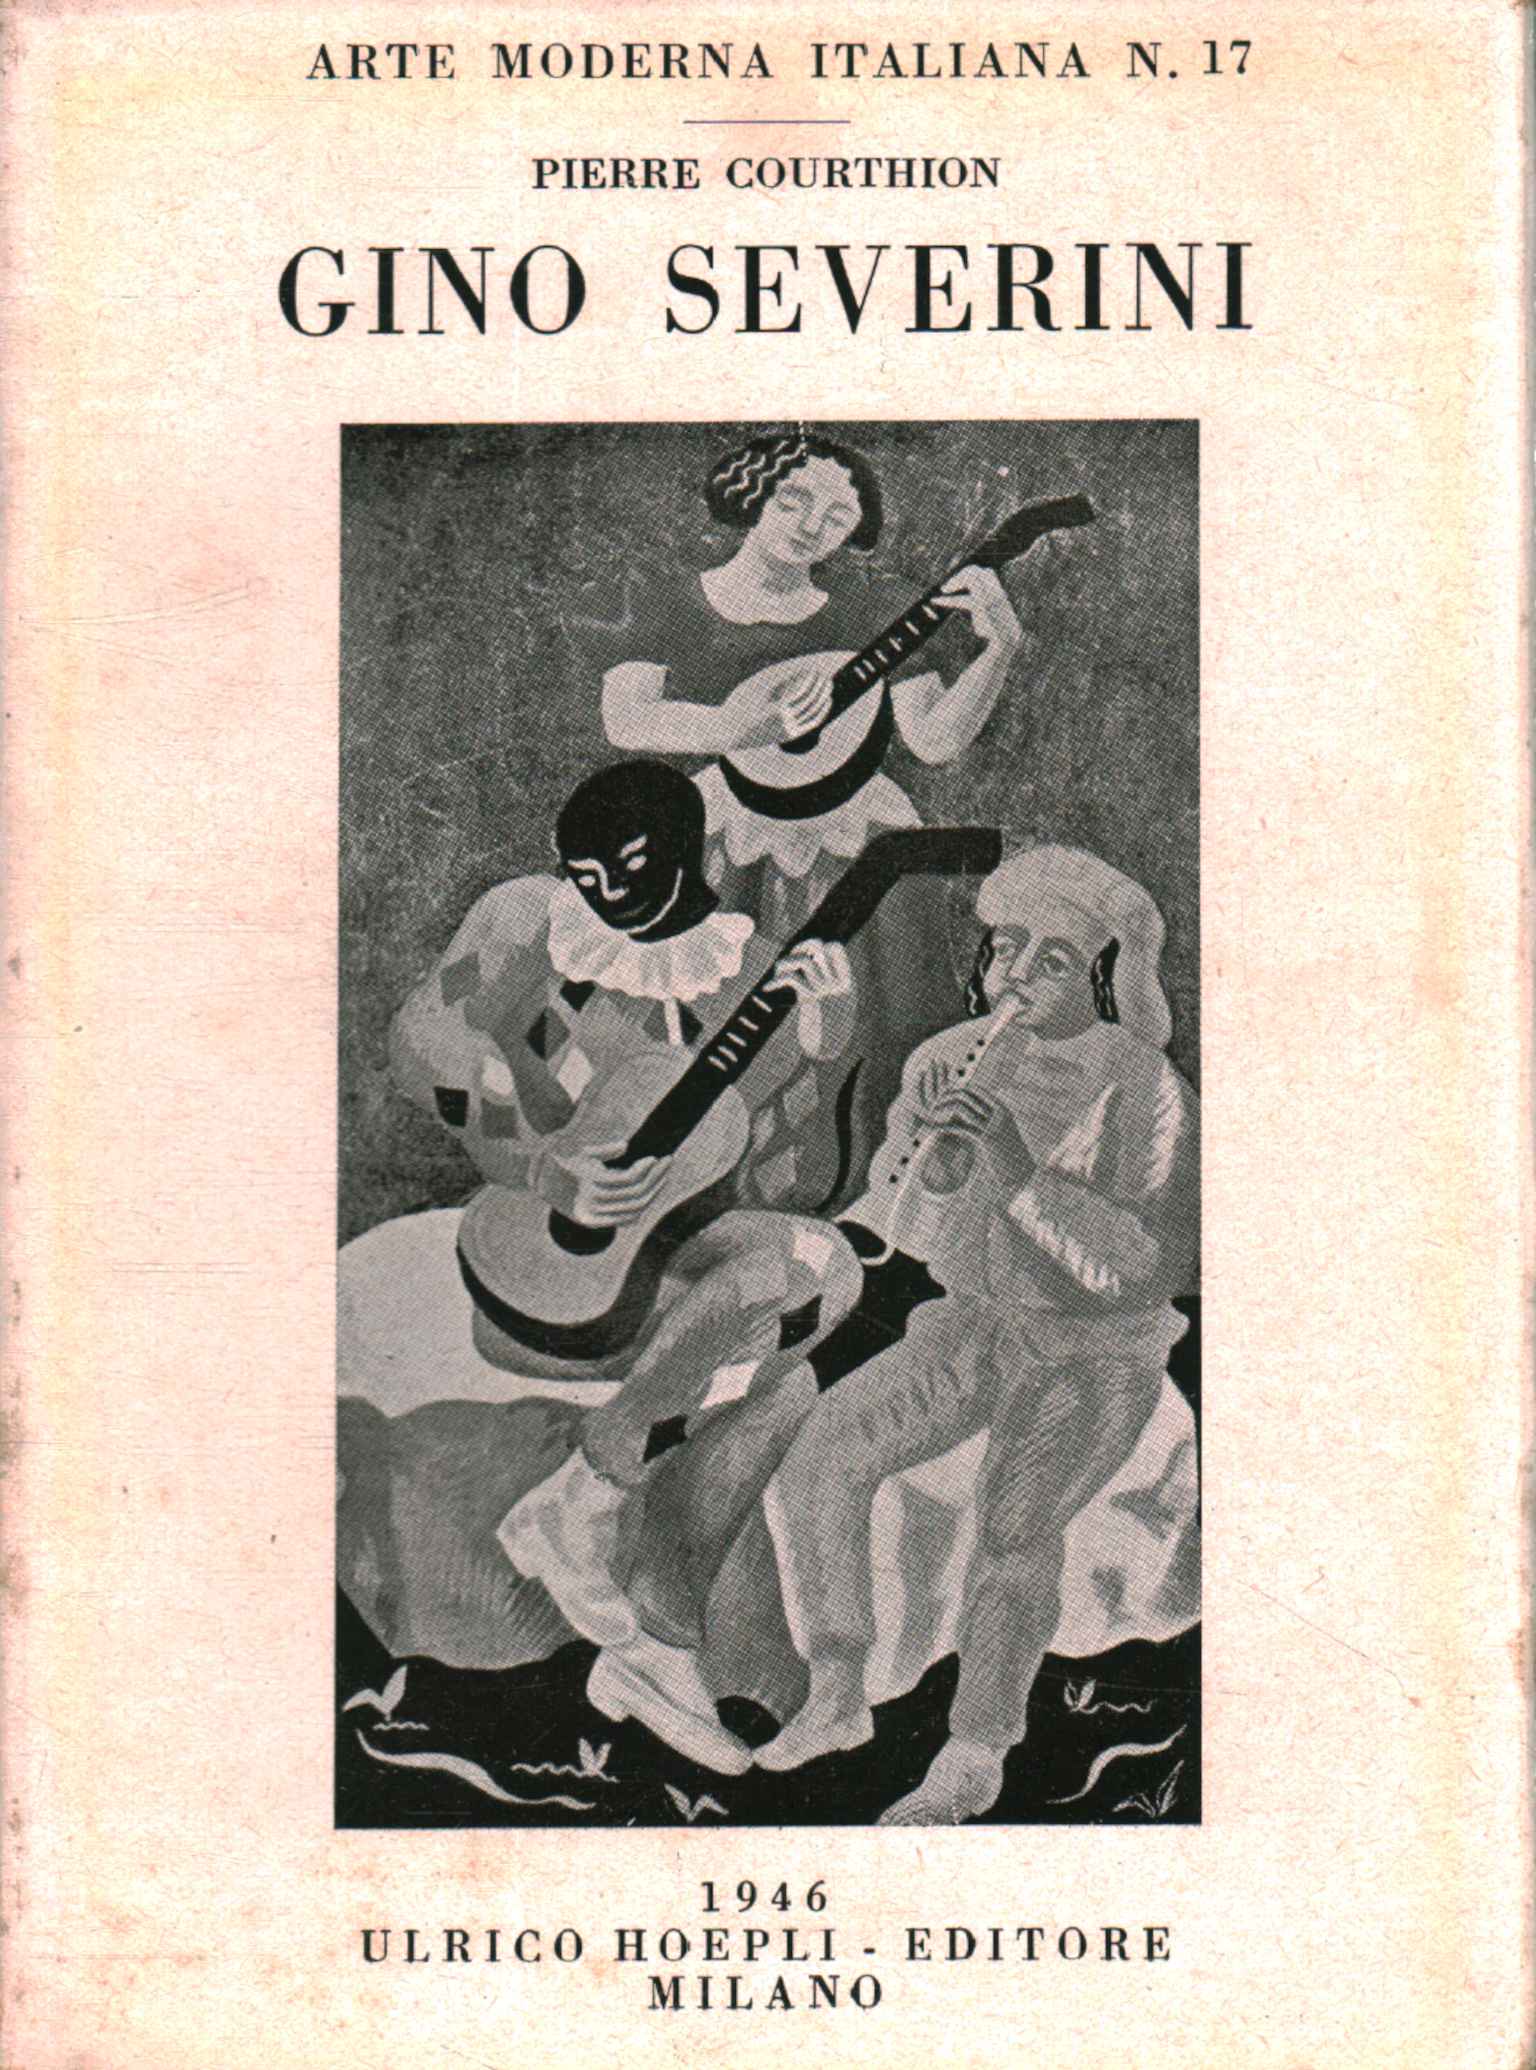 Gino Séverini